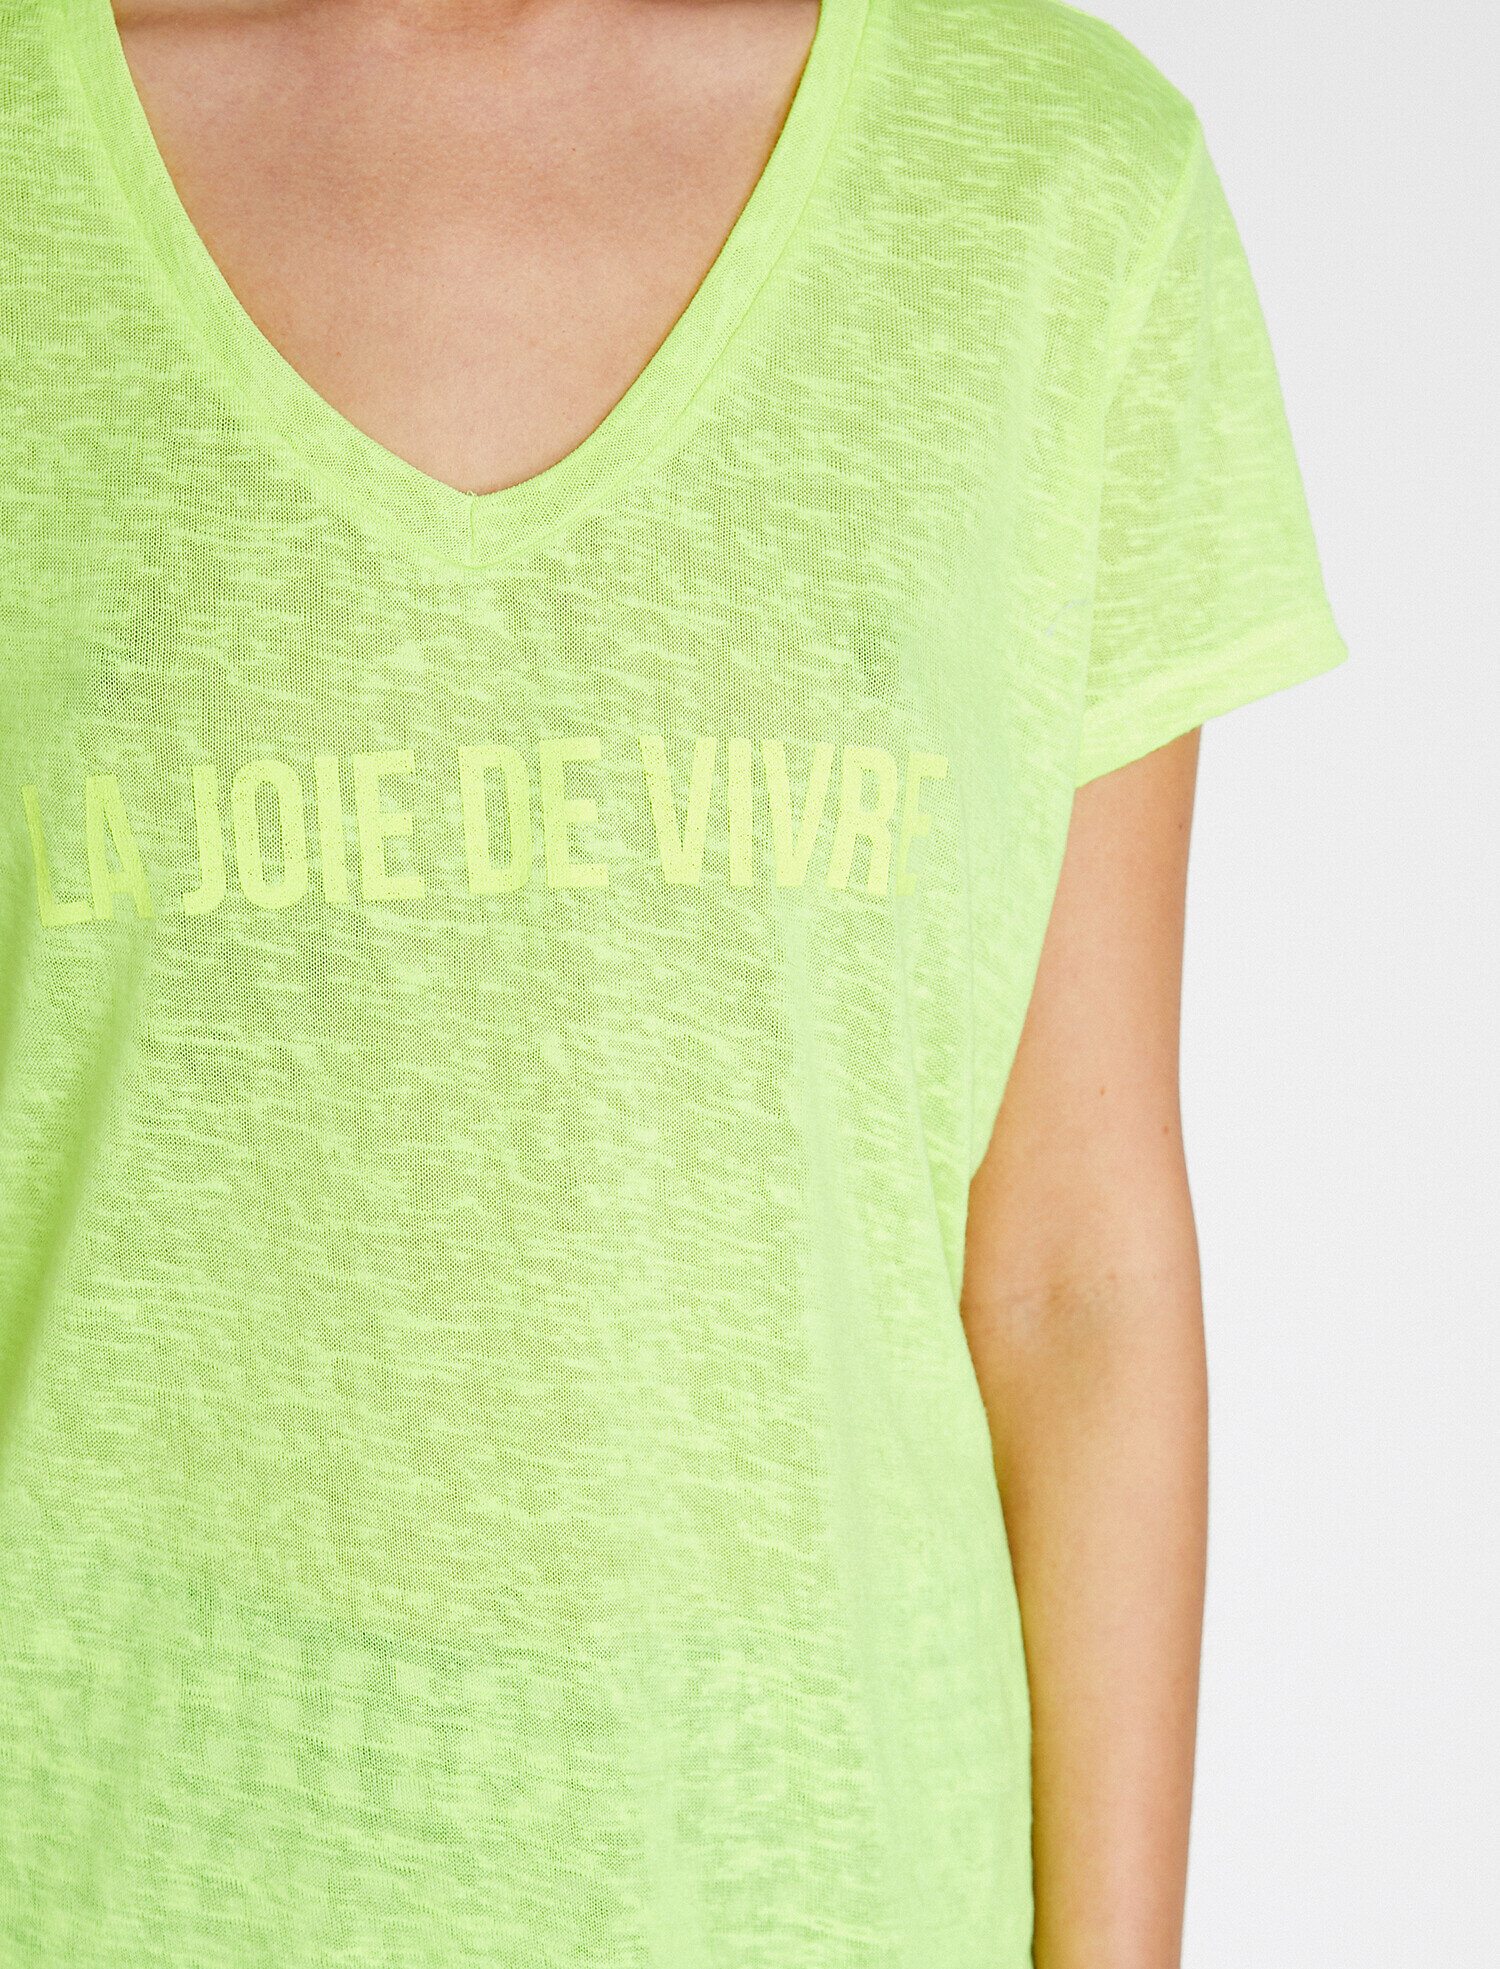 kale Bulvar ihlal etmek  Neon Sarı Bayan Yazılı Baskılı T-Shirt 9YAK13213EKNS3 | Koton